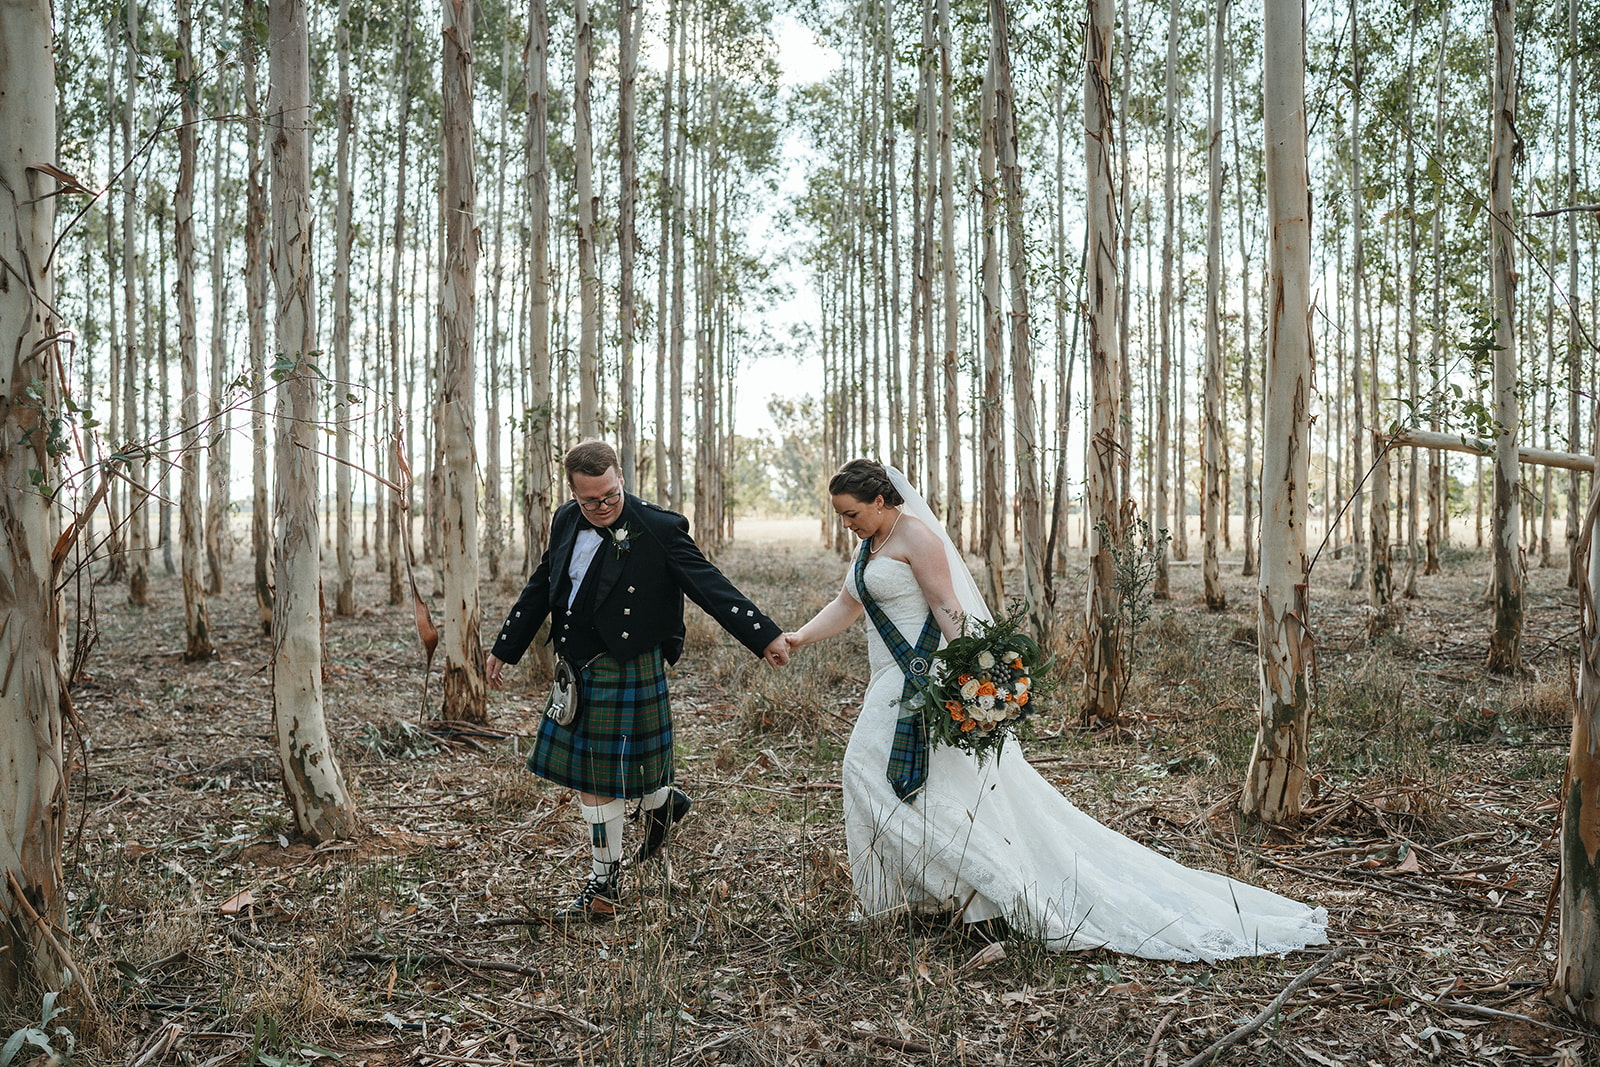 Scottish Wedding, Scottish Wedding Photography, Albury Wedding Photography, Brown Brothers Wedding Photography, Albury Wedding Photographer